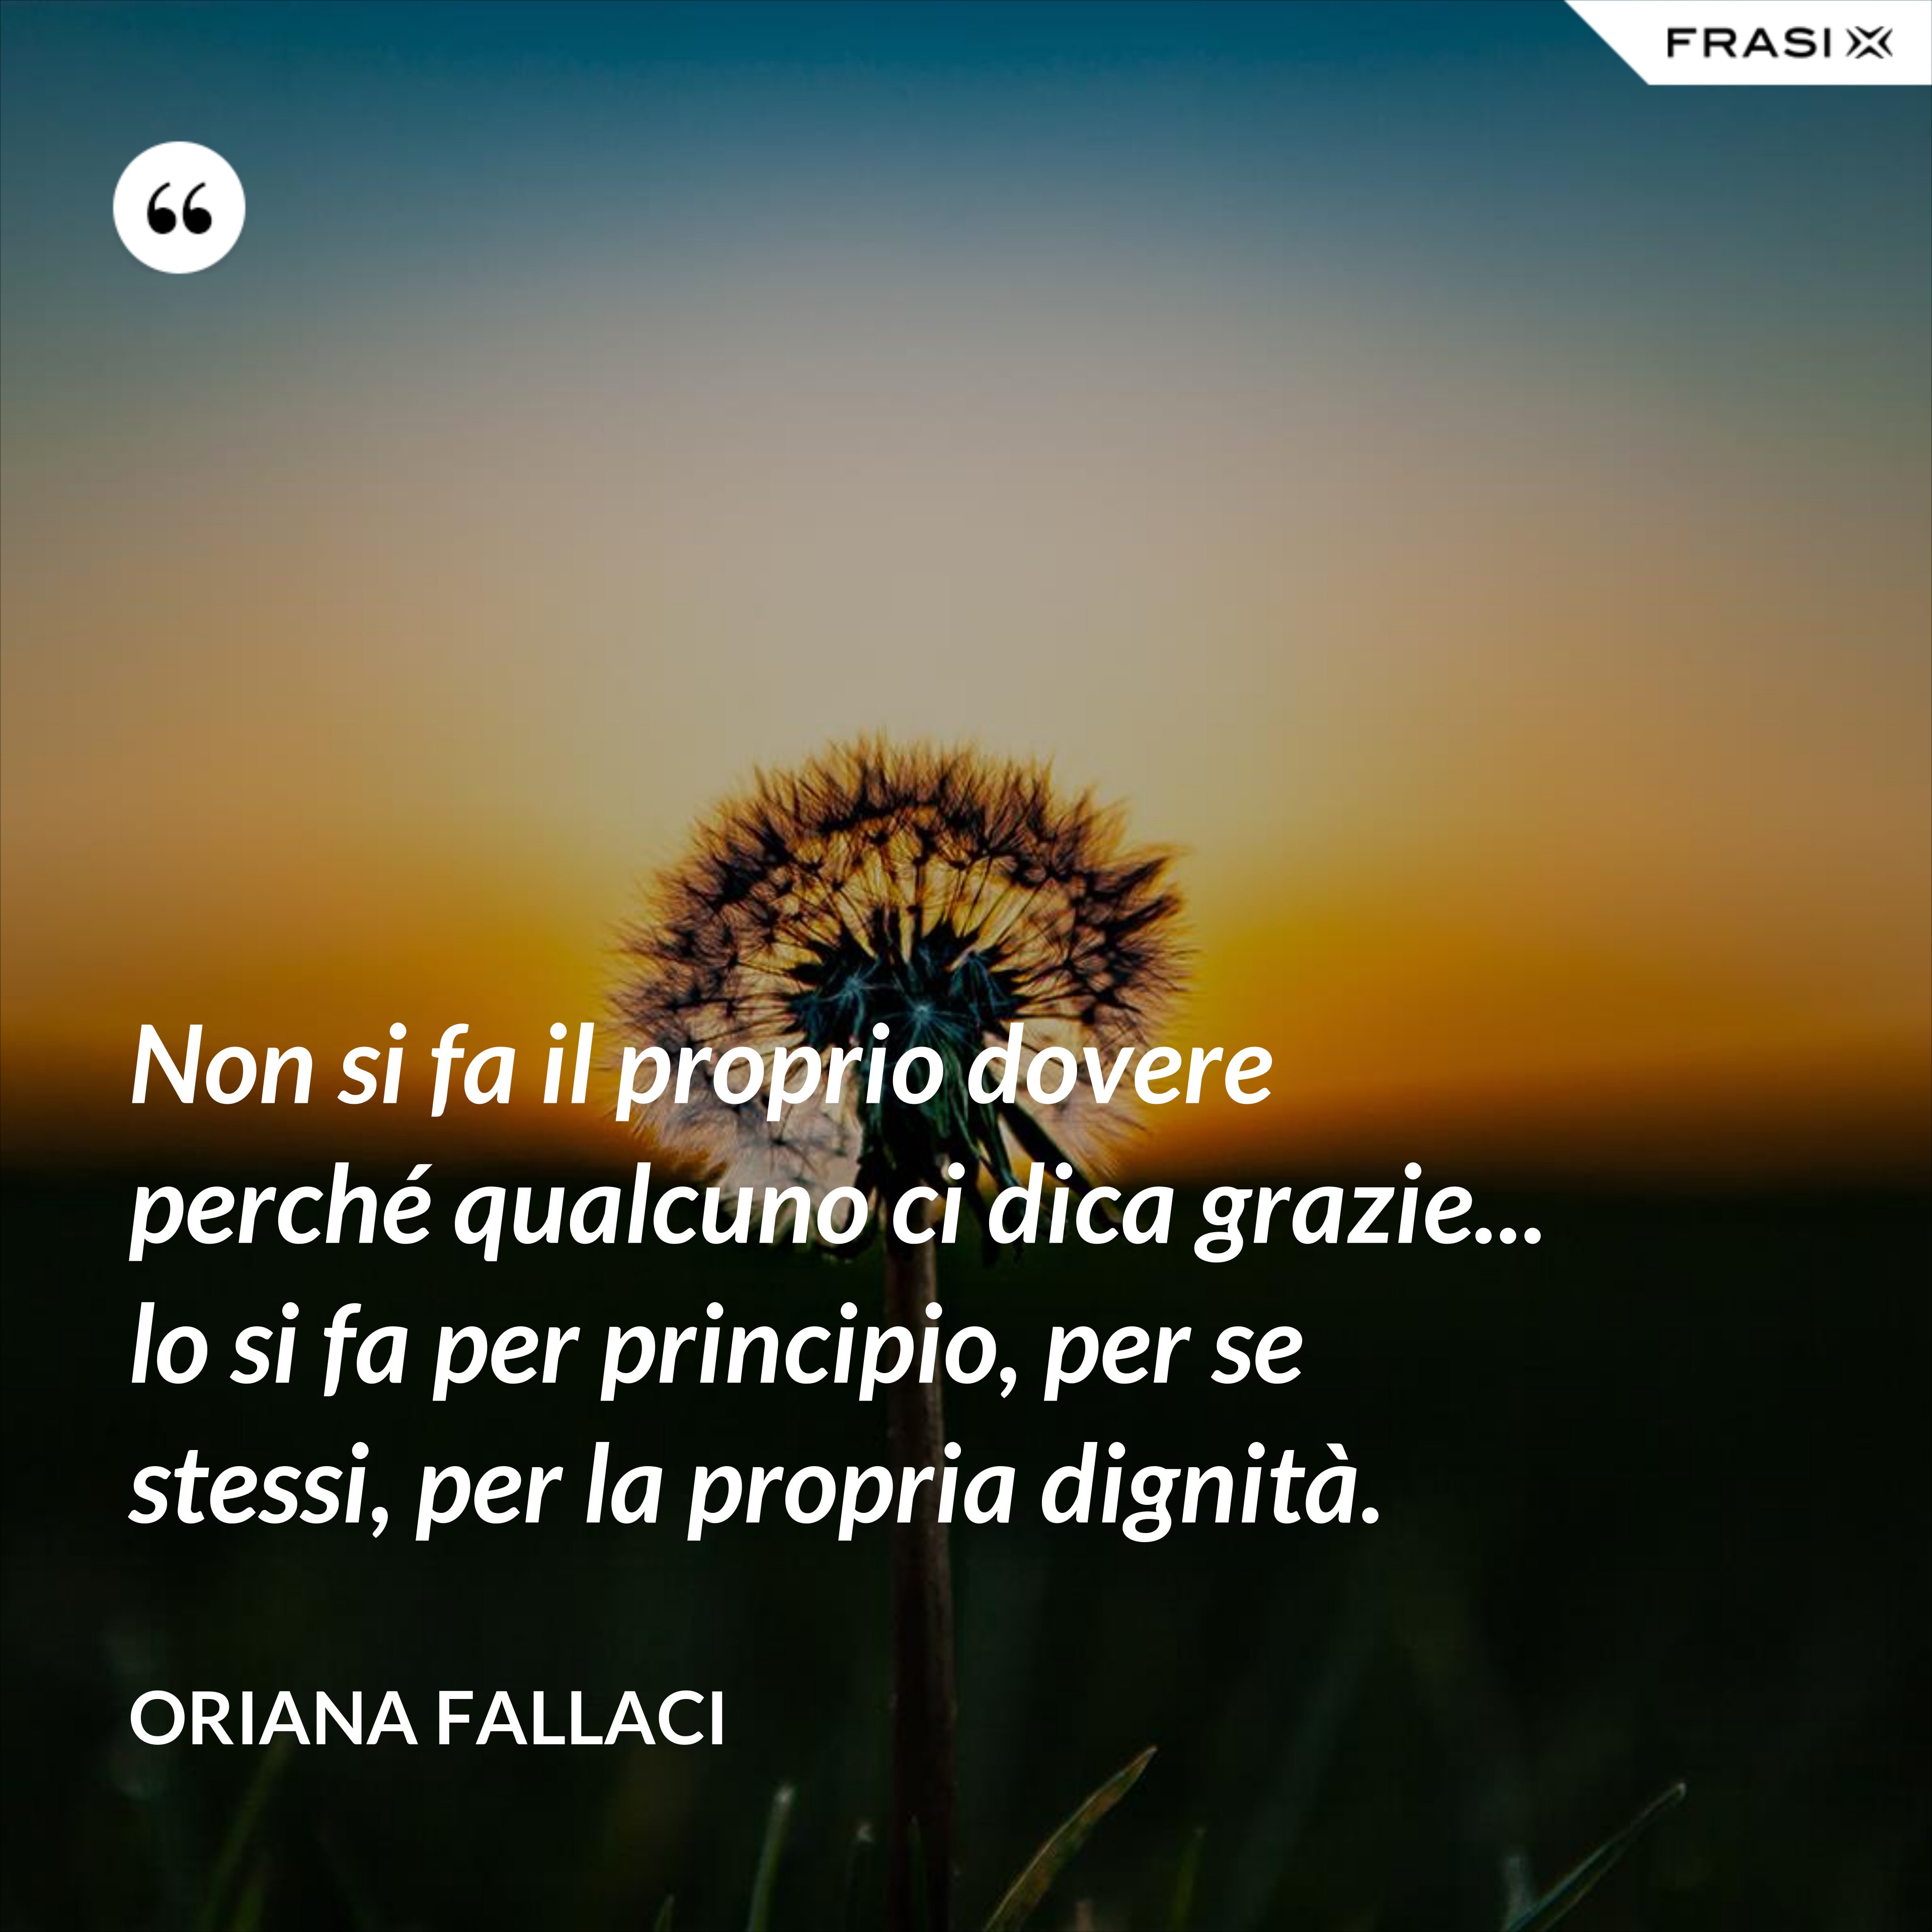 Non si fa il proprio dovere perché qualcuno ci dica grazie... lo si fa per principio, per se stessi, per la propria dignità. - Oriana Fallaci